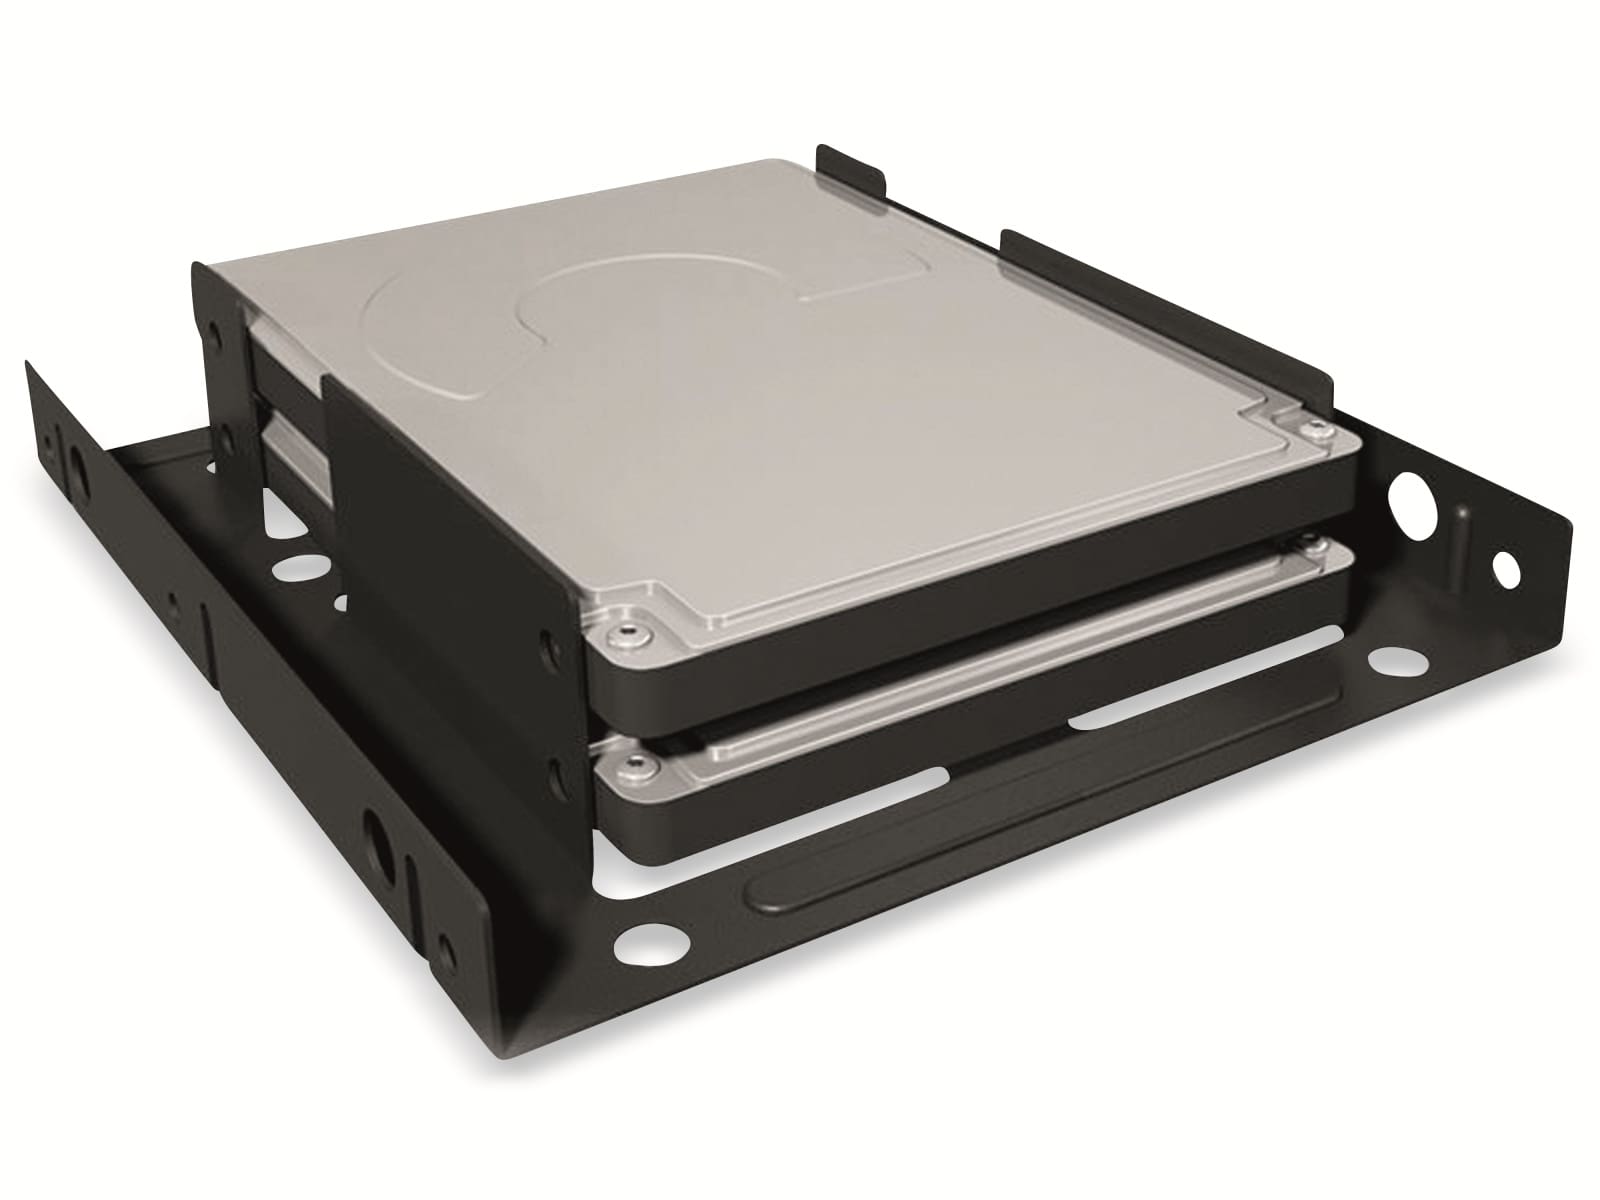 ICY BOX Einbaurahmen IB-AC643, 2x 2,5" SSD/HDD